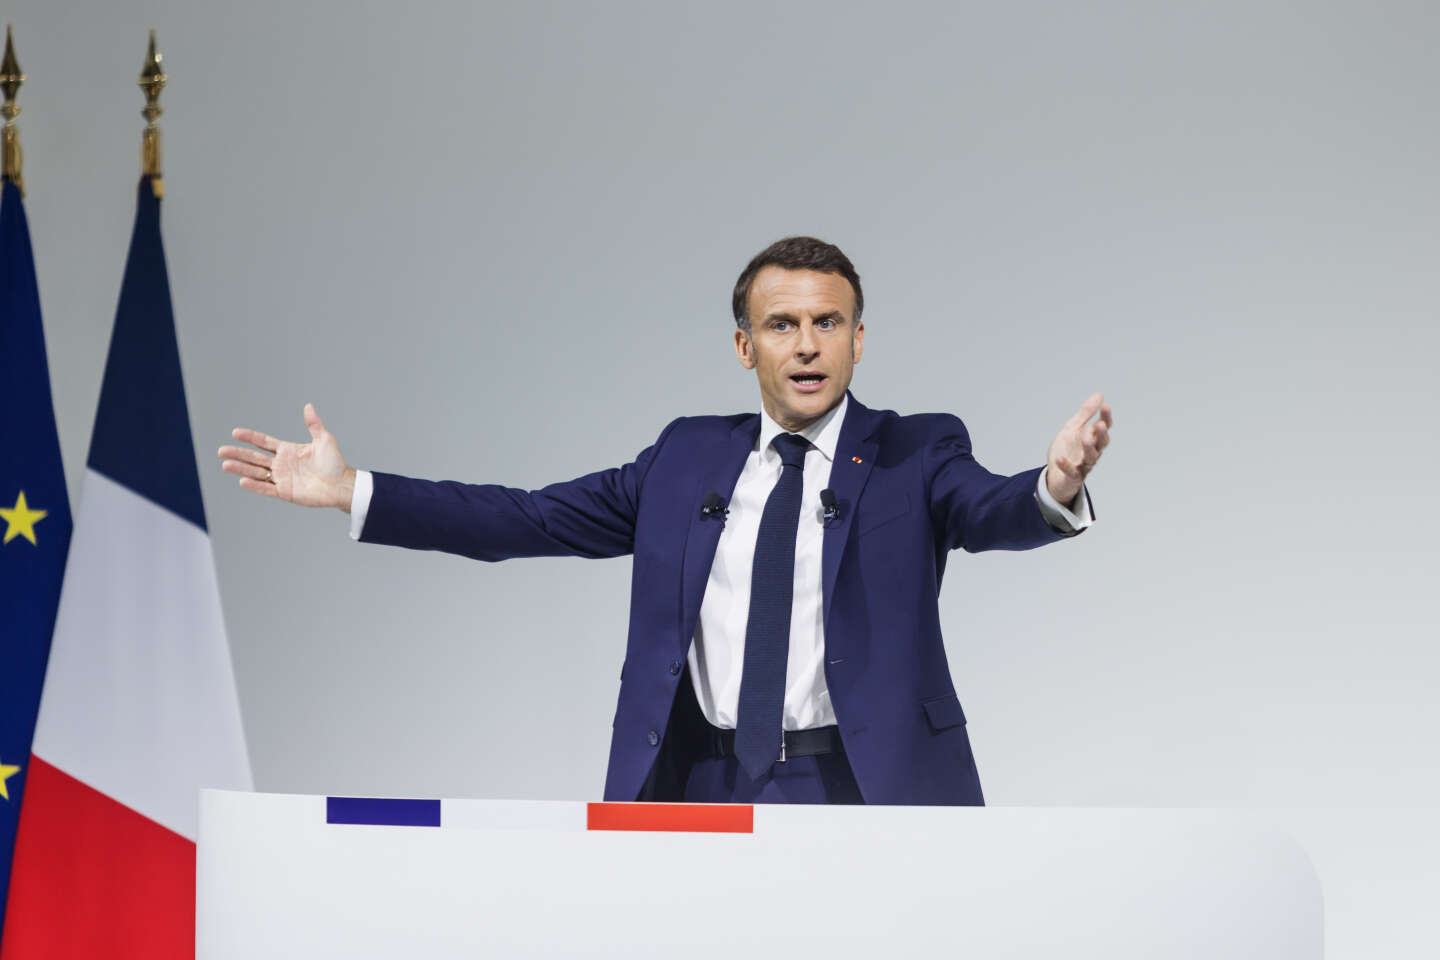 La lettre d’Emmanuel Macron aux Français : “Je vous ai entendu”